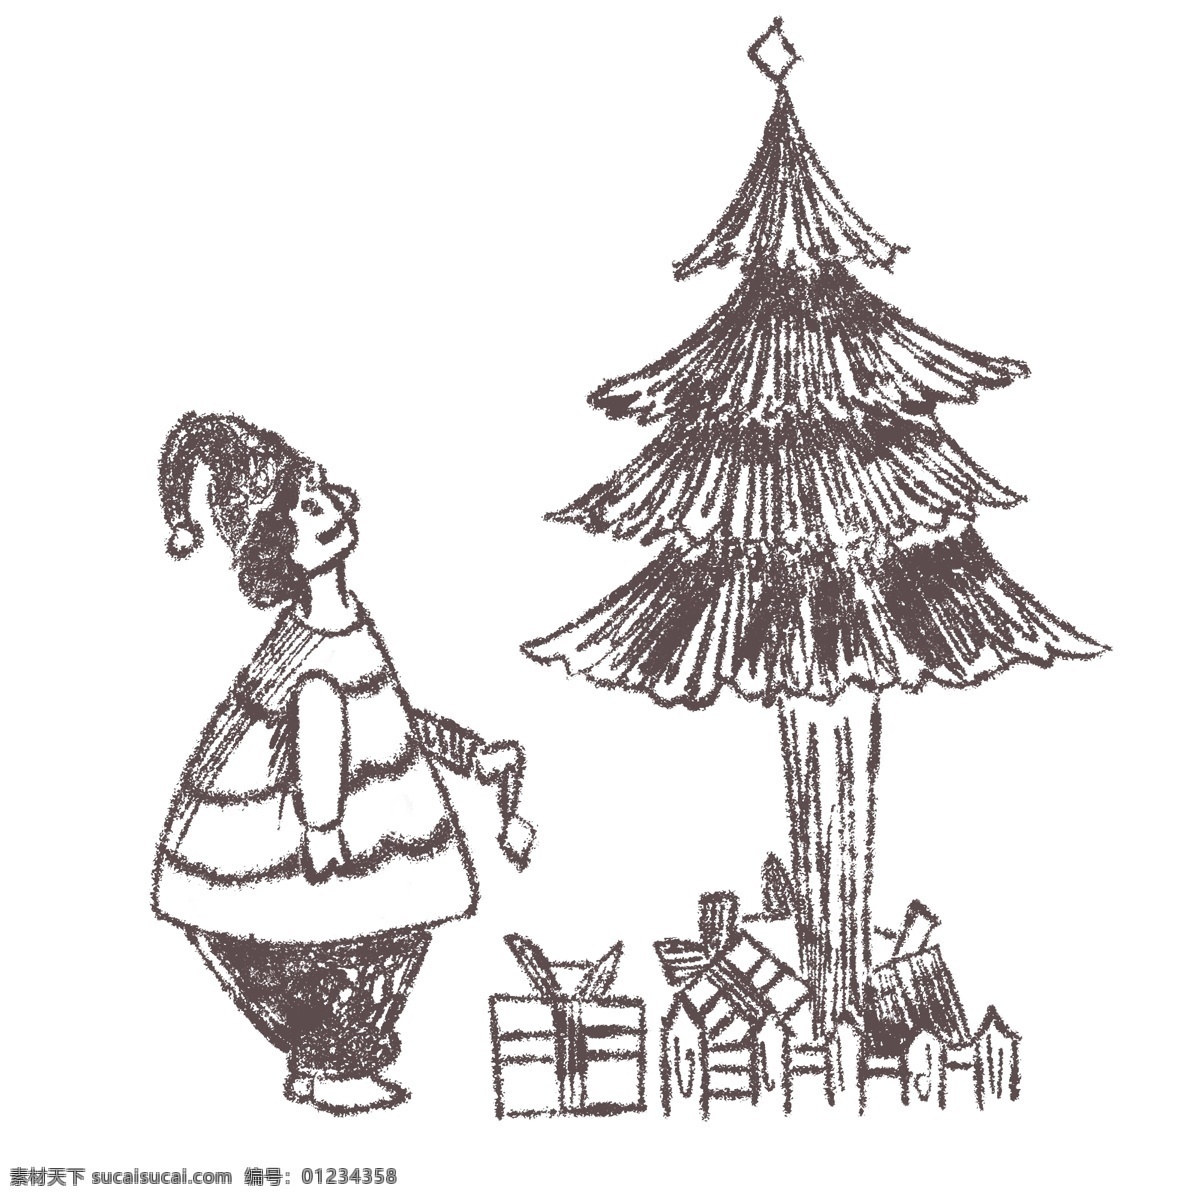 线描 手绘 圣诞树 插画 线描圣诞树 线帽圣诞帽 线描礼盒 手绘卡通人物 圣诞节 礼盒 线描蝴蝶结